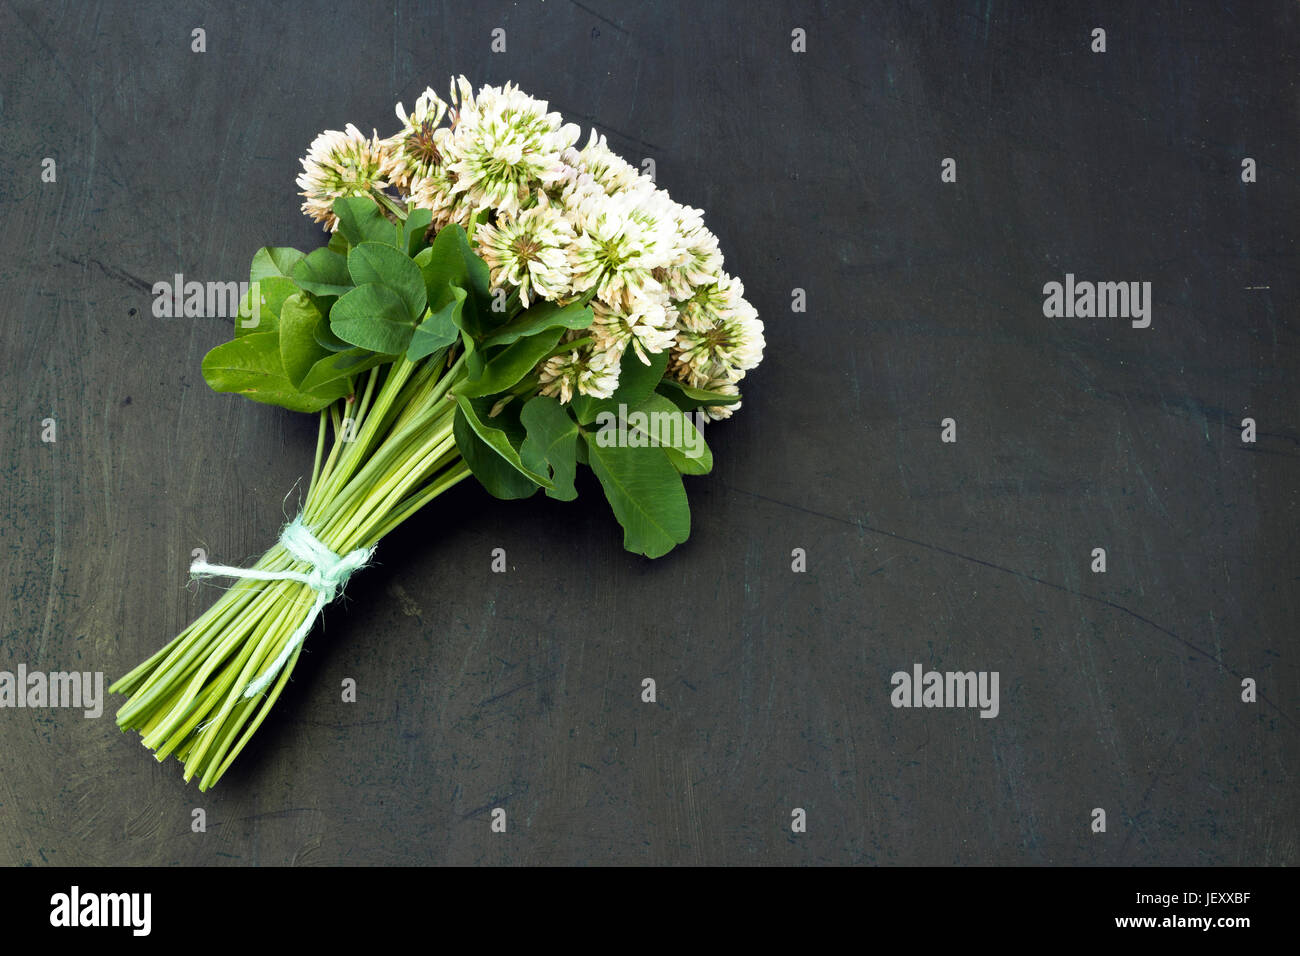 Le trèfle blanc (Trifolium repens) dans un bouquet sur un fond sombre Banque D'Images